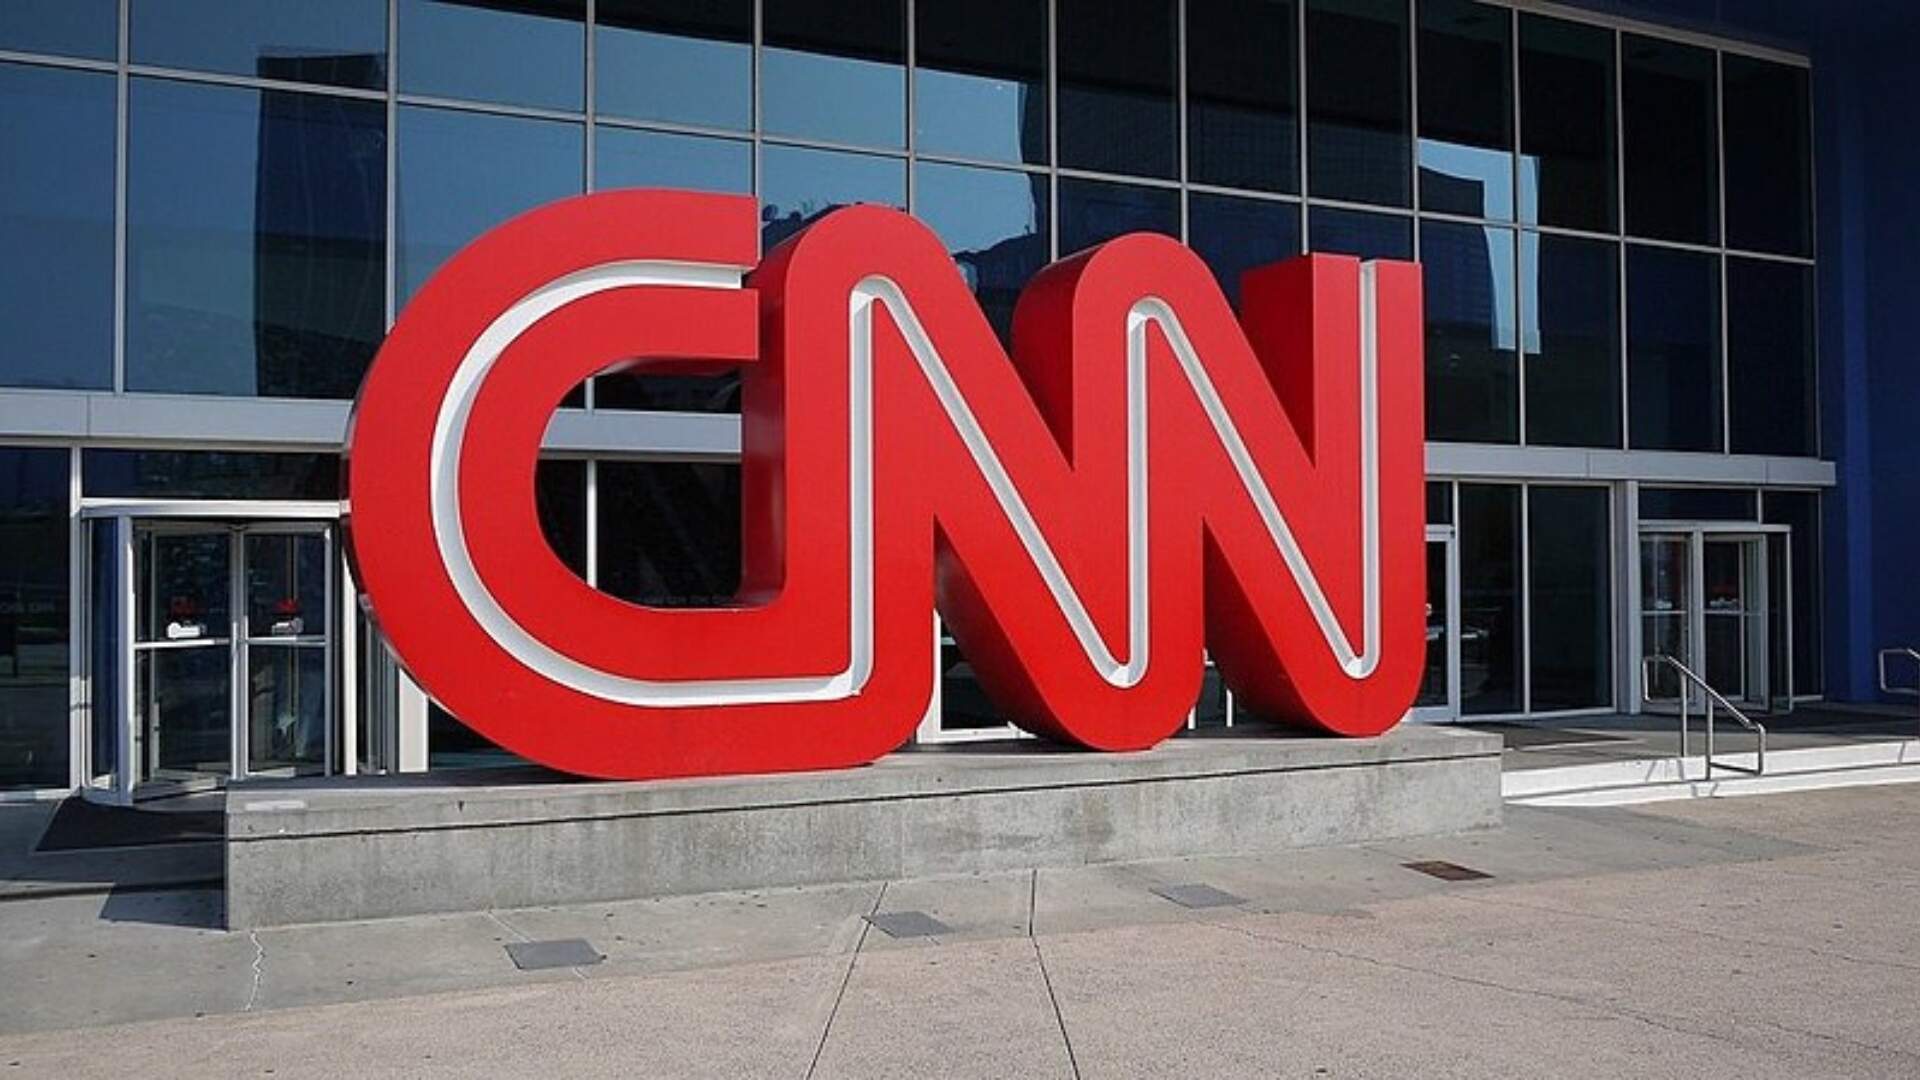 Reformulação: Além de Rafael Colombo, CNN anuncia demissão de mais 3 grandes nomes e prepara mudanças - Metropolitana FM